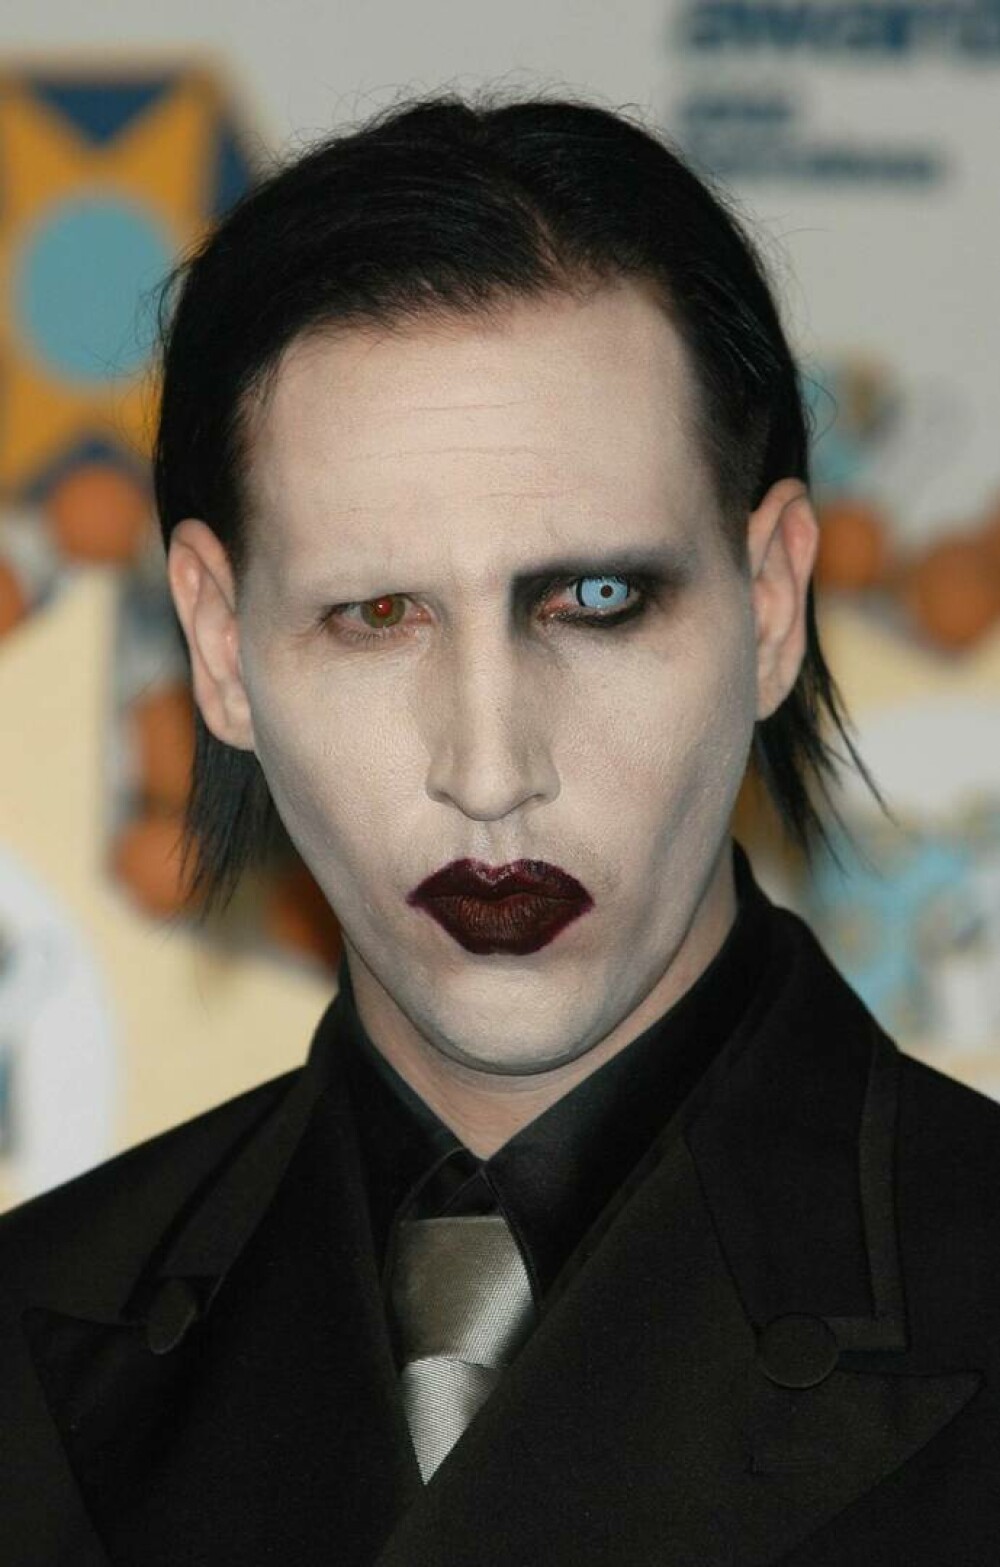 Cum arată Marilyn Manson fără machiaj. Controversatul artist împlinește 54 de ani | GALERIE FOTO - Imaginea 13